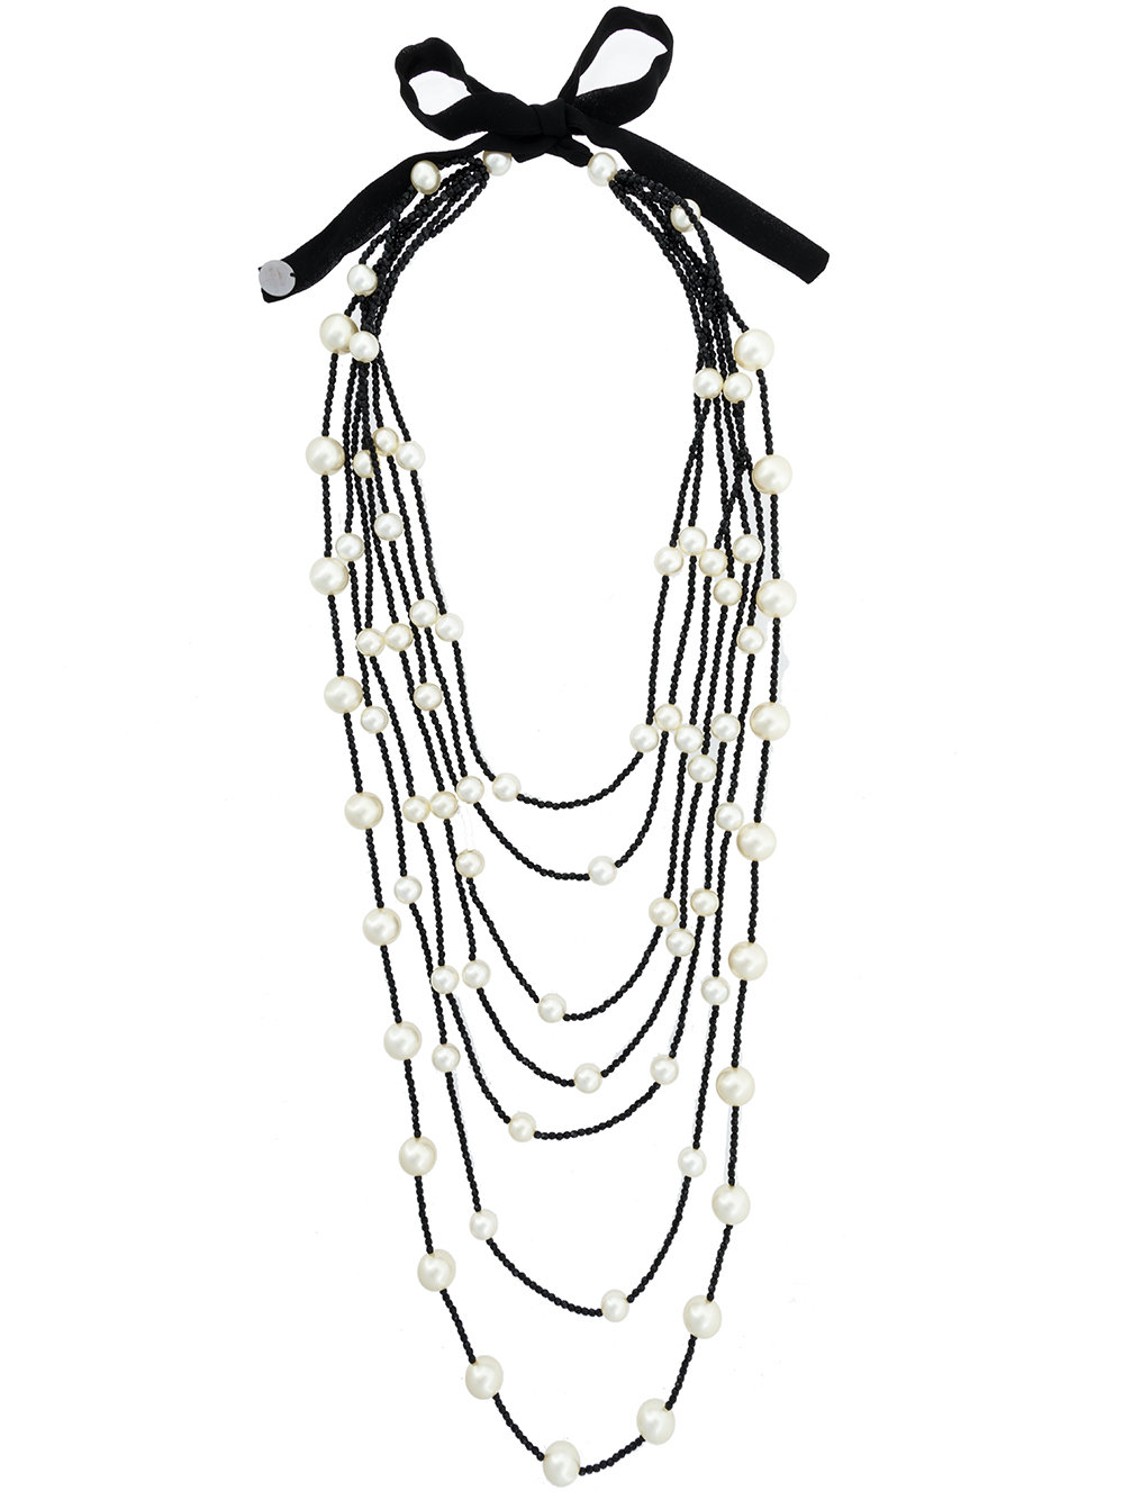 shop Maria Calderara  Bijoux: Collana Maria Calderara, multi filo, con perline nere e perle color neutro, chiusura con nastro di seta. number 1094